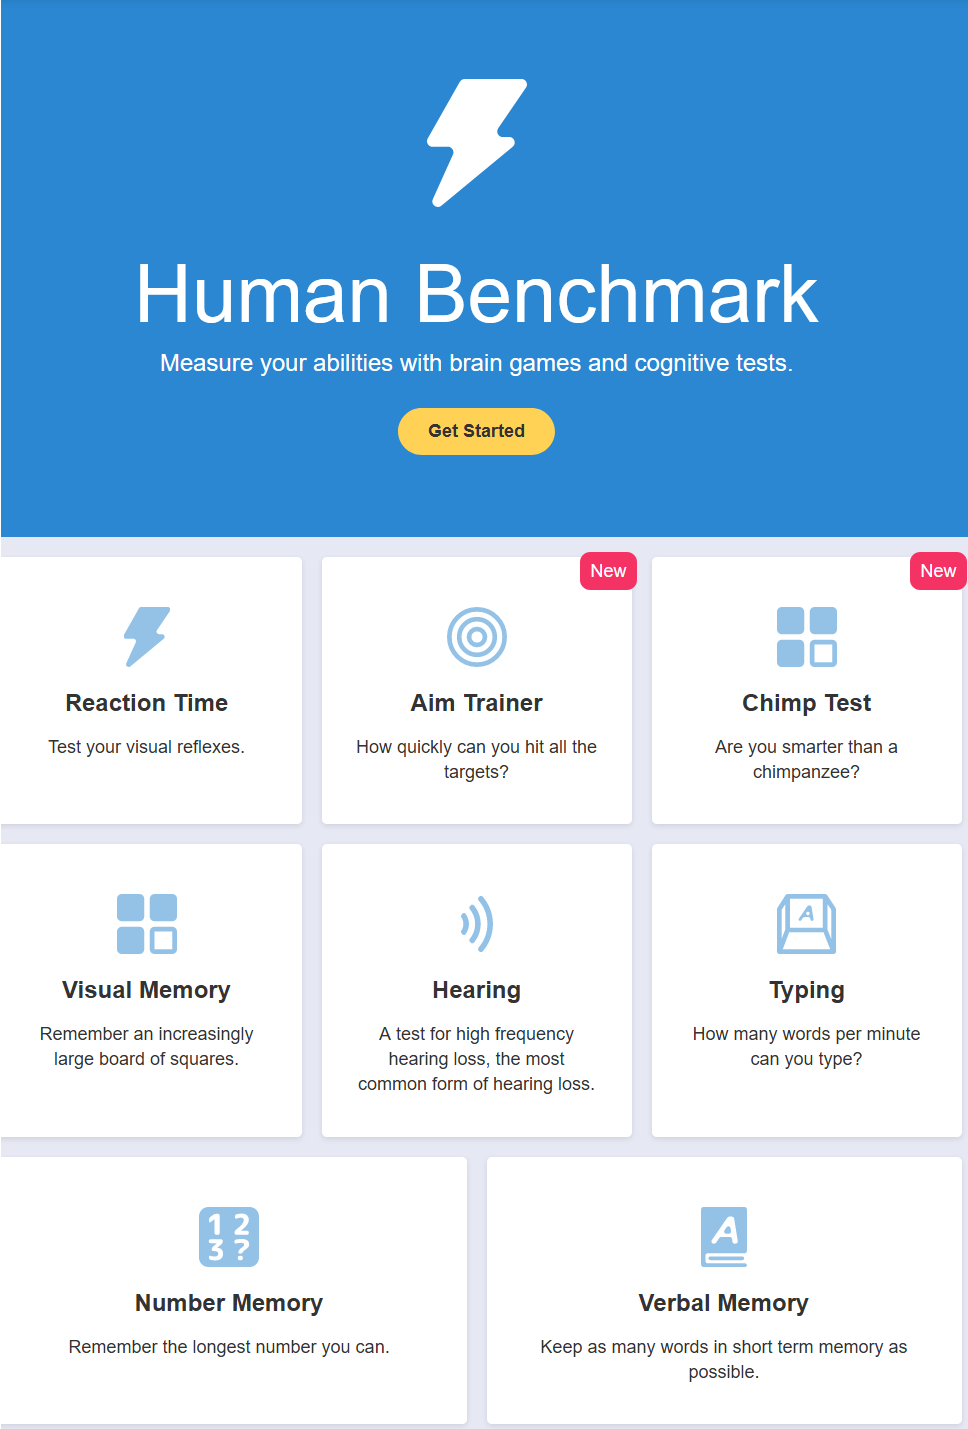 human benchmark test - pointcrow - Twitch